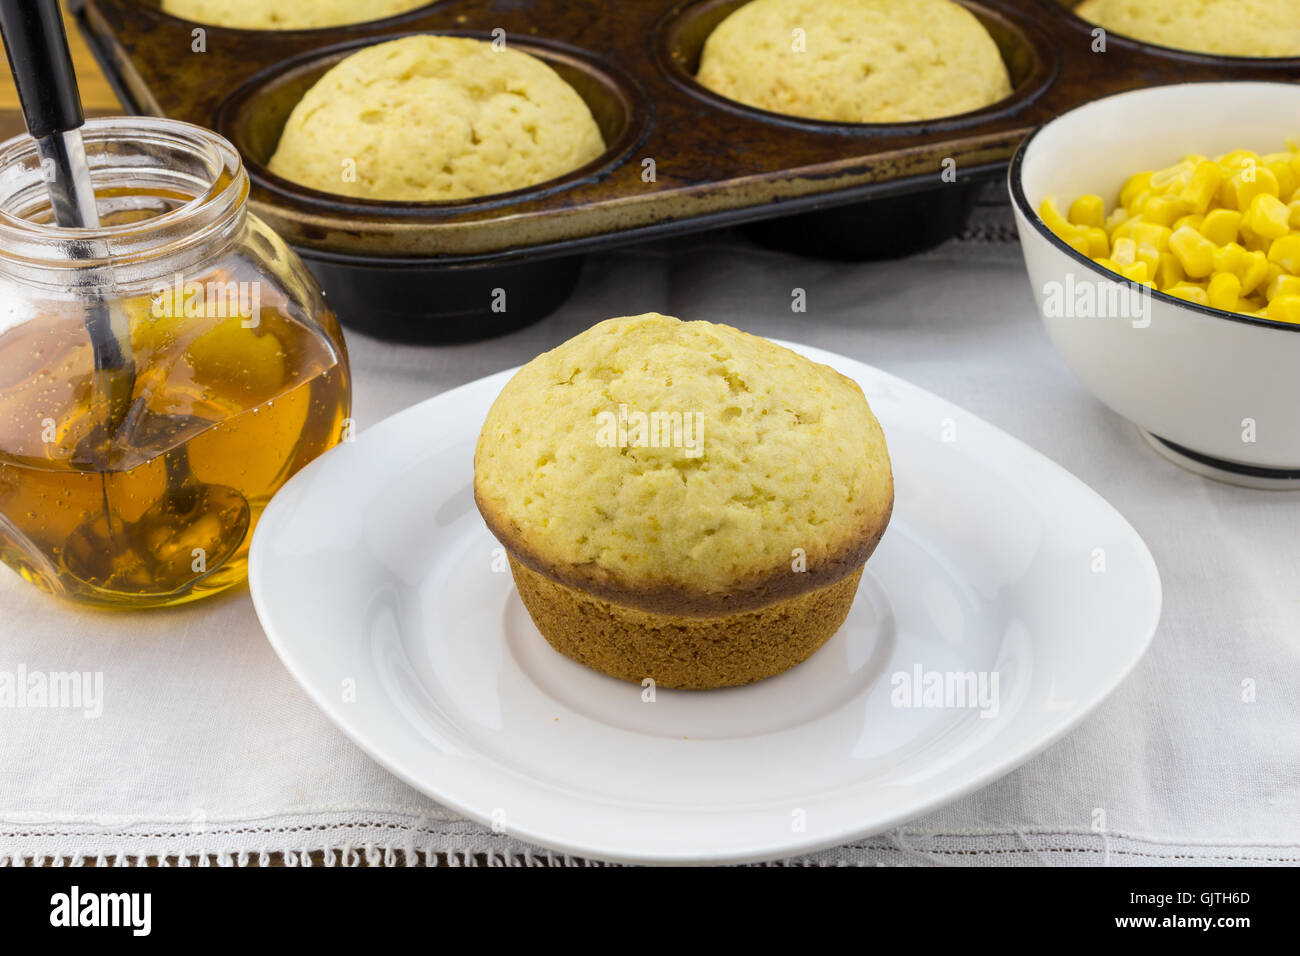 Foto von Mais Muffin in Platte mit Muffins in Pfanne, Sirup und Mais in einer Schüssel auf dem weißen Tuch Stockfoto